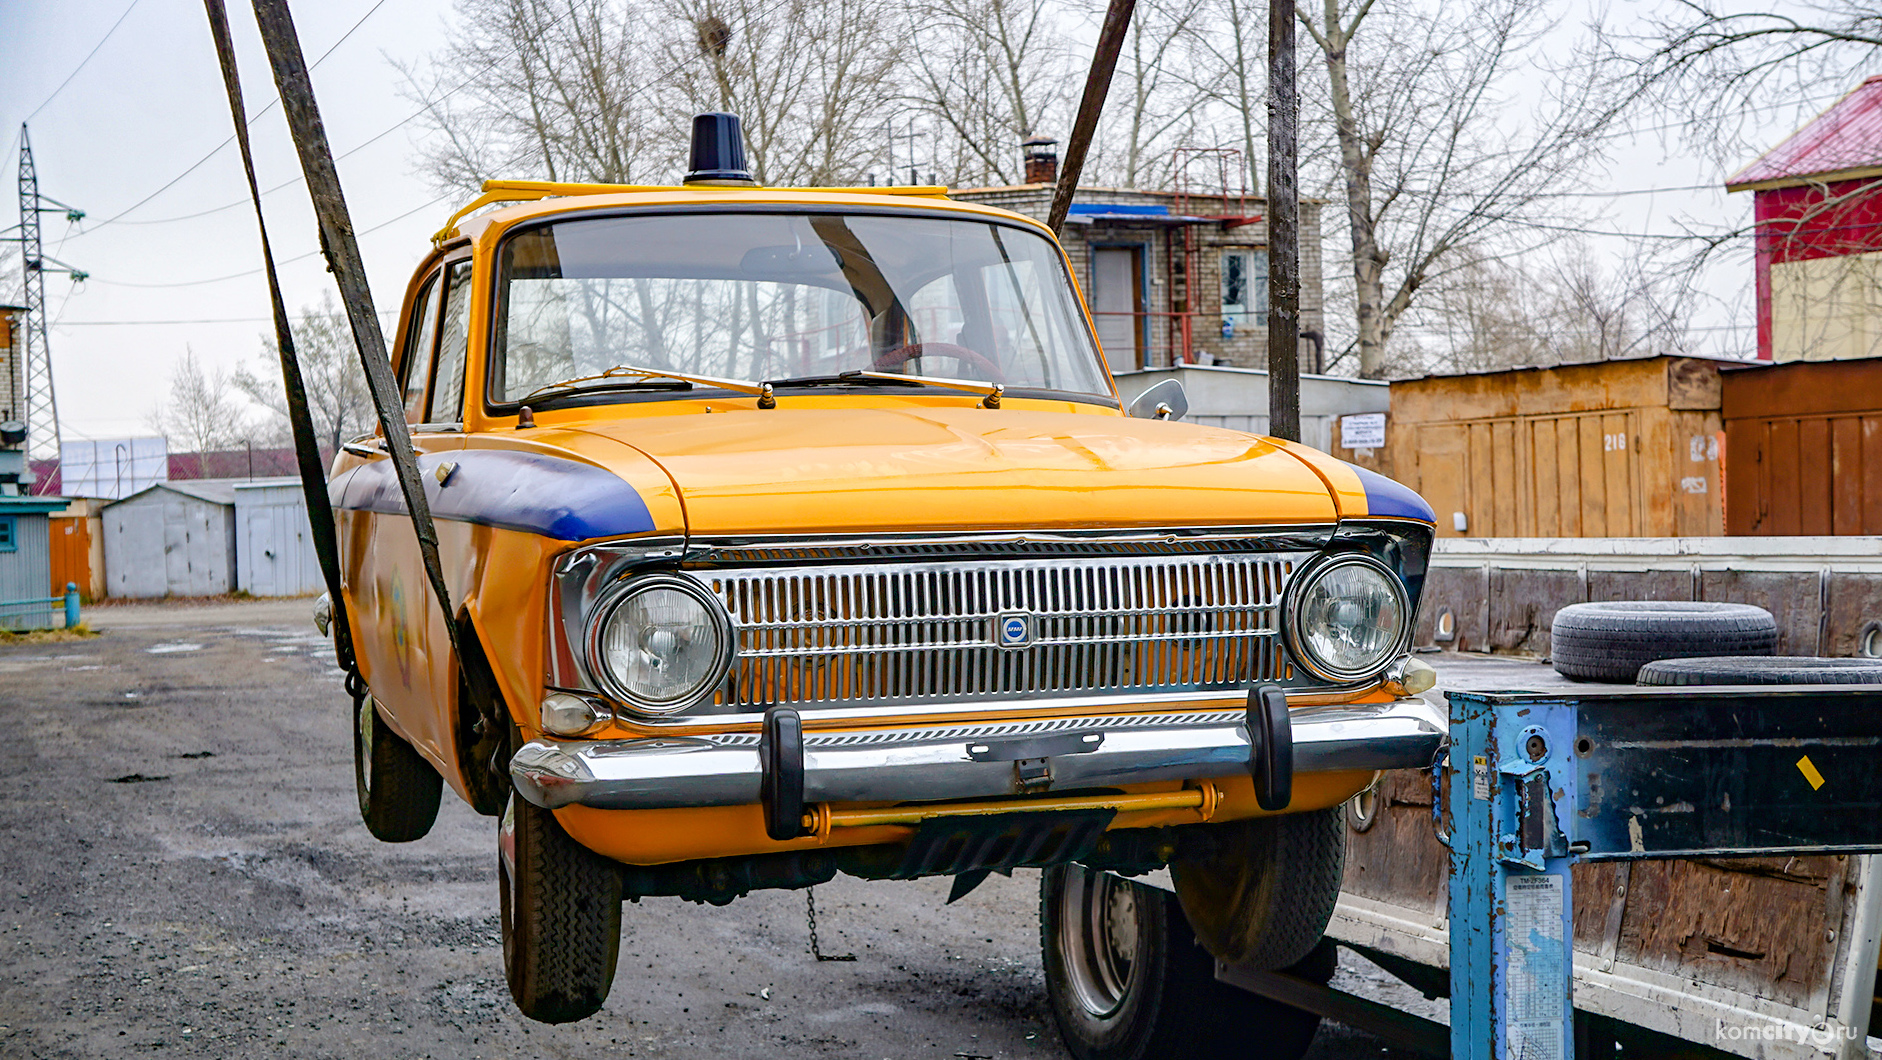 Комсомольск-на-Амуре подарил Биробиджану памятник милицейской машине